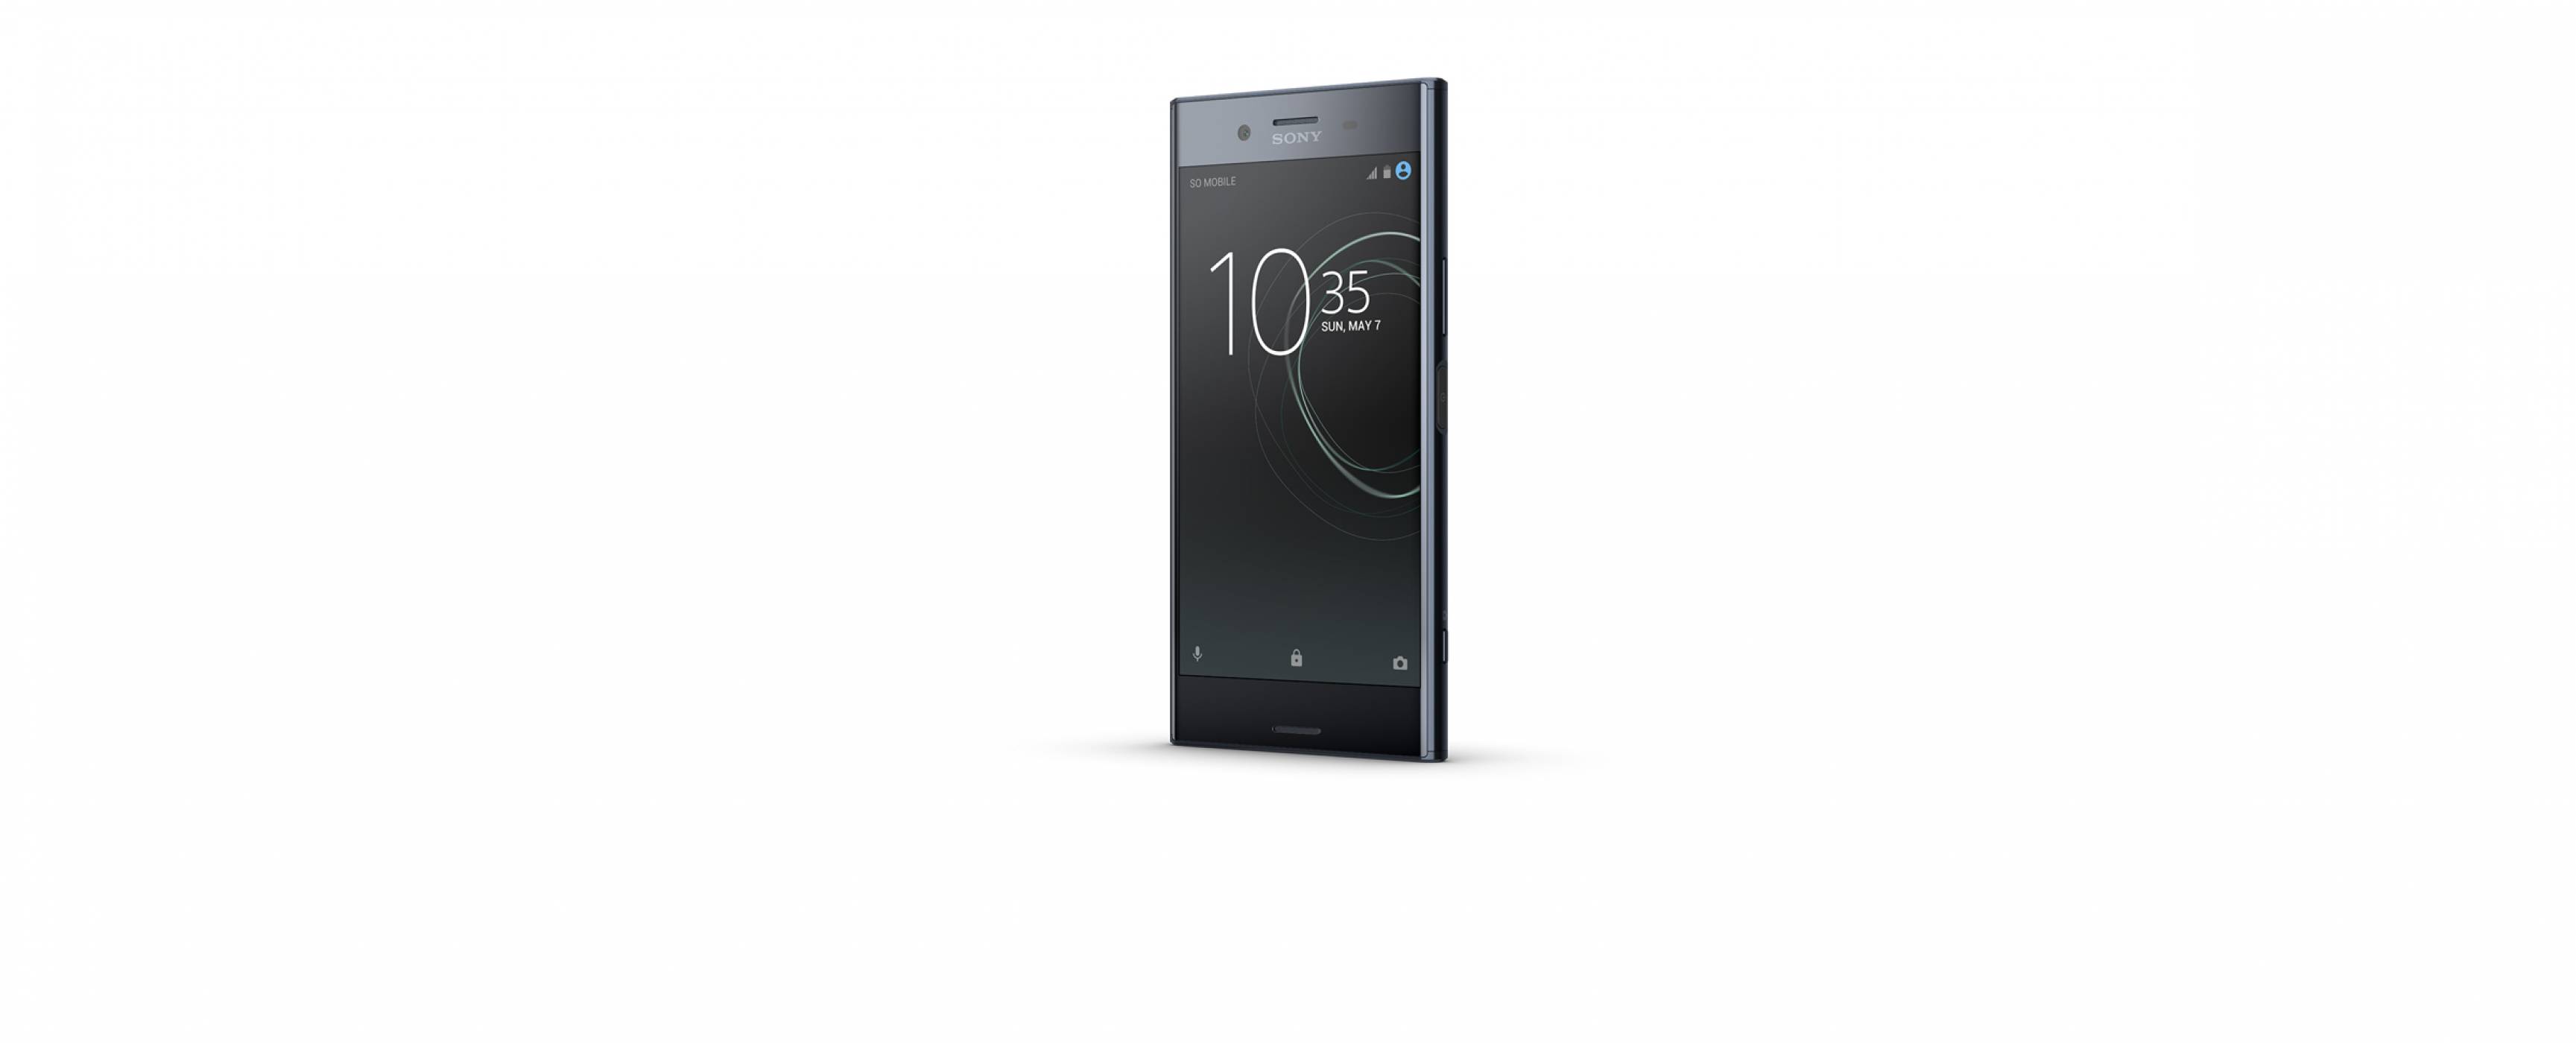 Sony ще се фокусира върху средния и висок клас смартфони